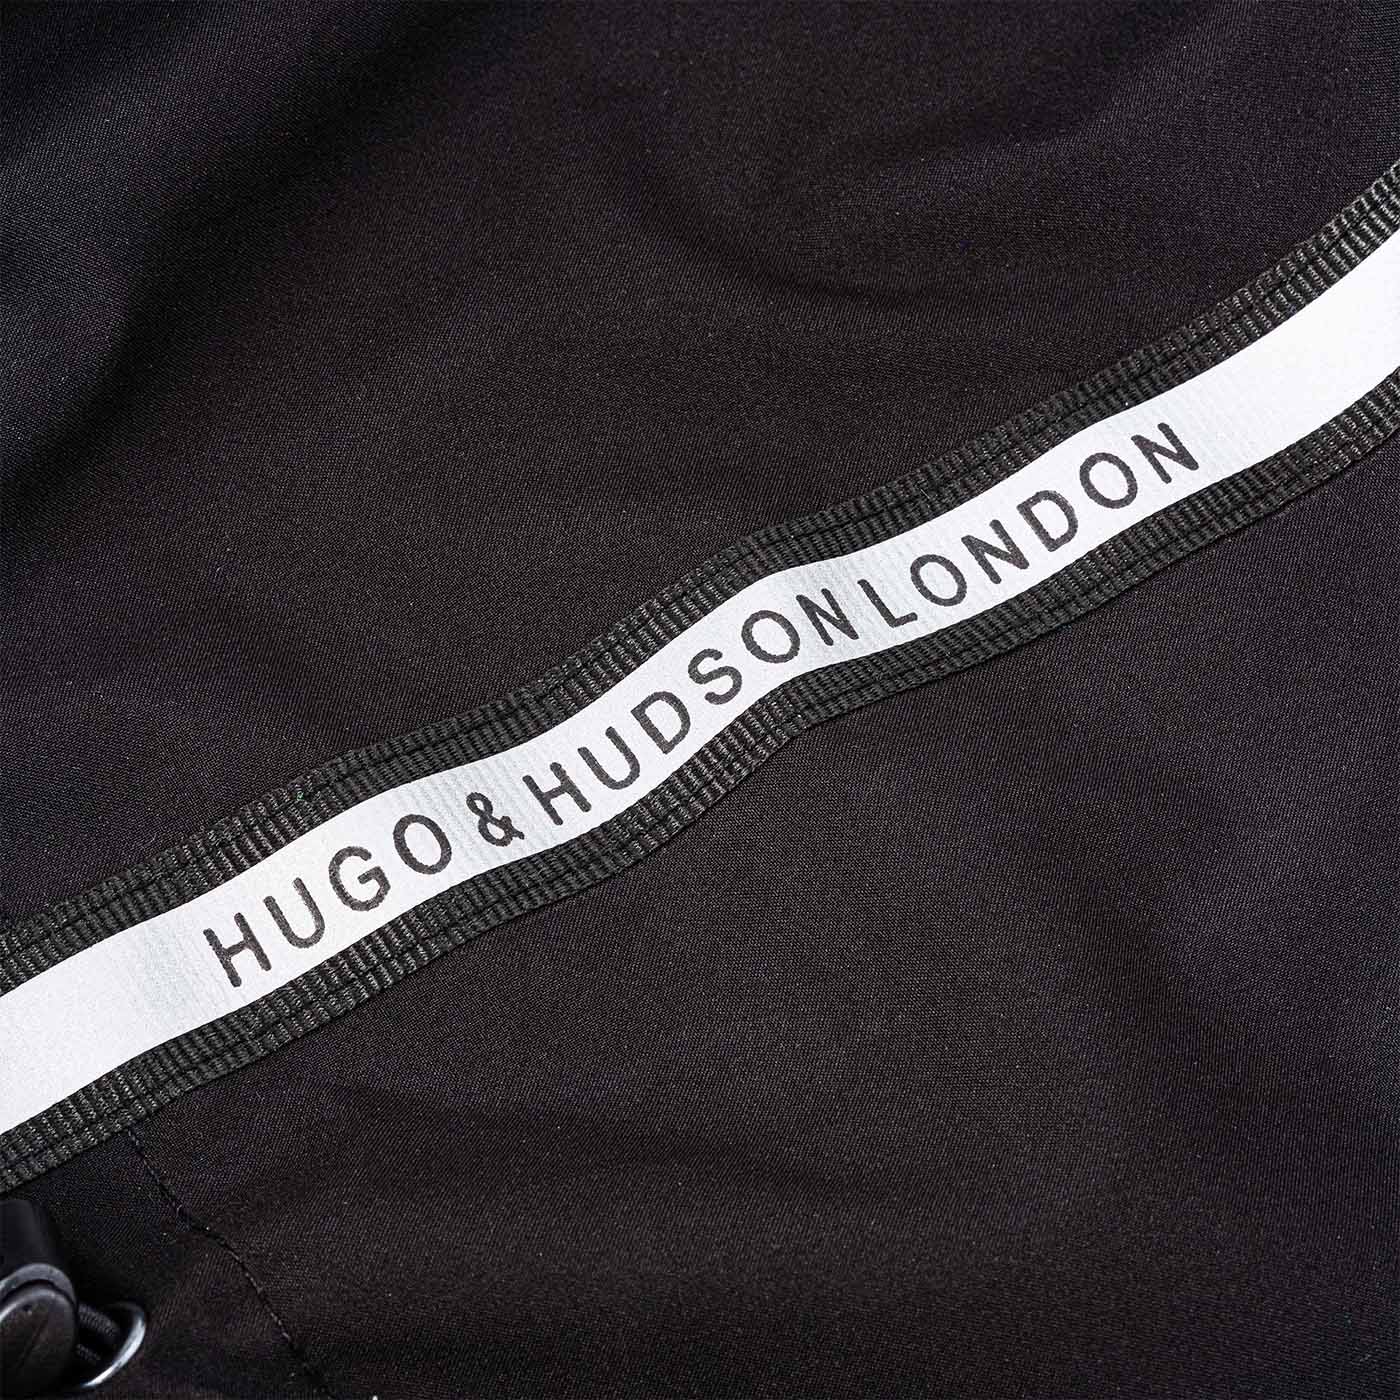 Hugo & Hudson Reflective Hooded Dog Overalls